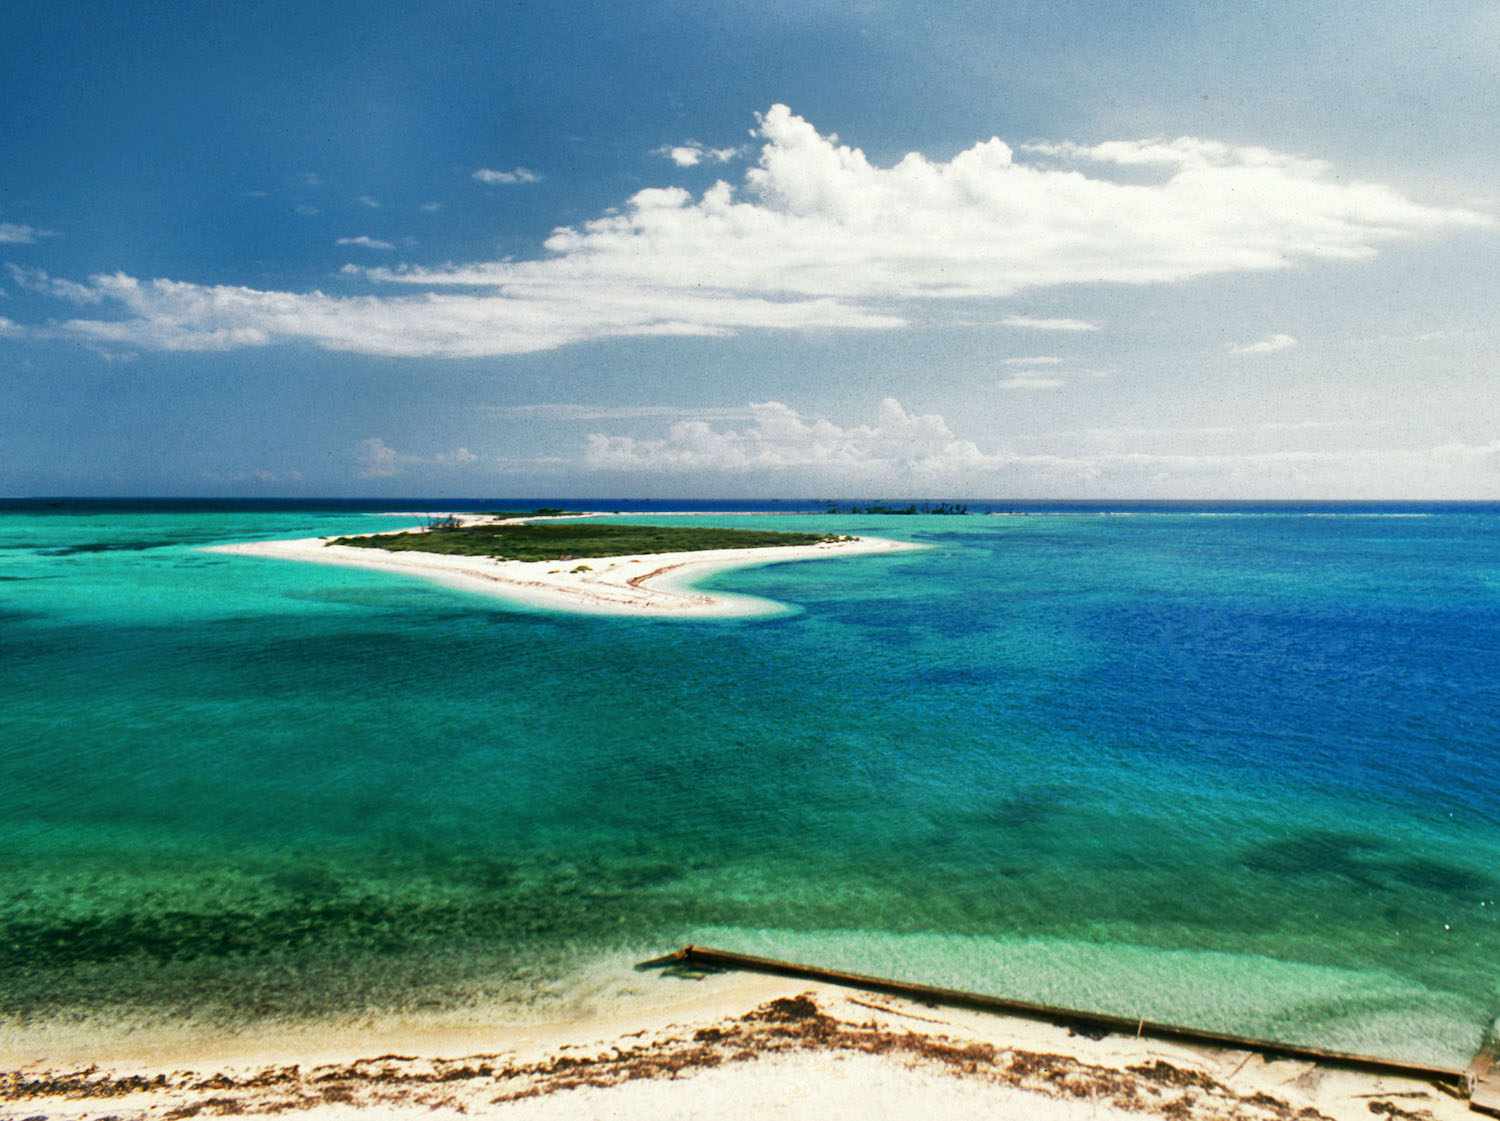 佛罗里达州西基岛的干托图加斯岛的蓝绿色水域